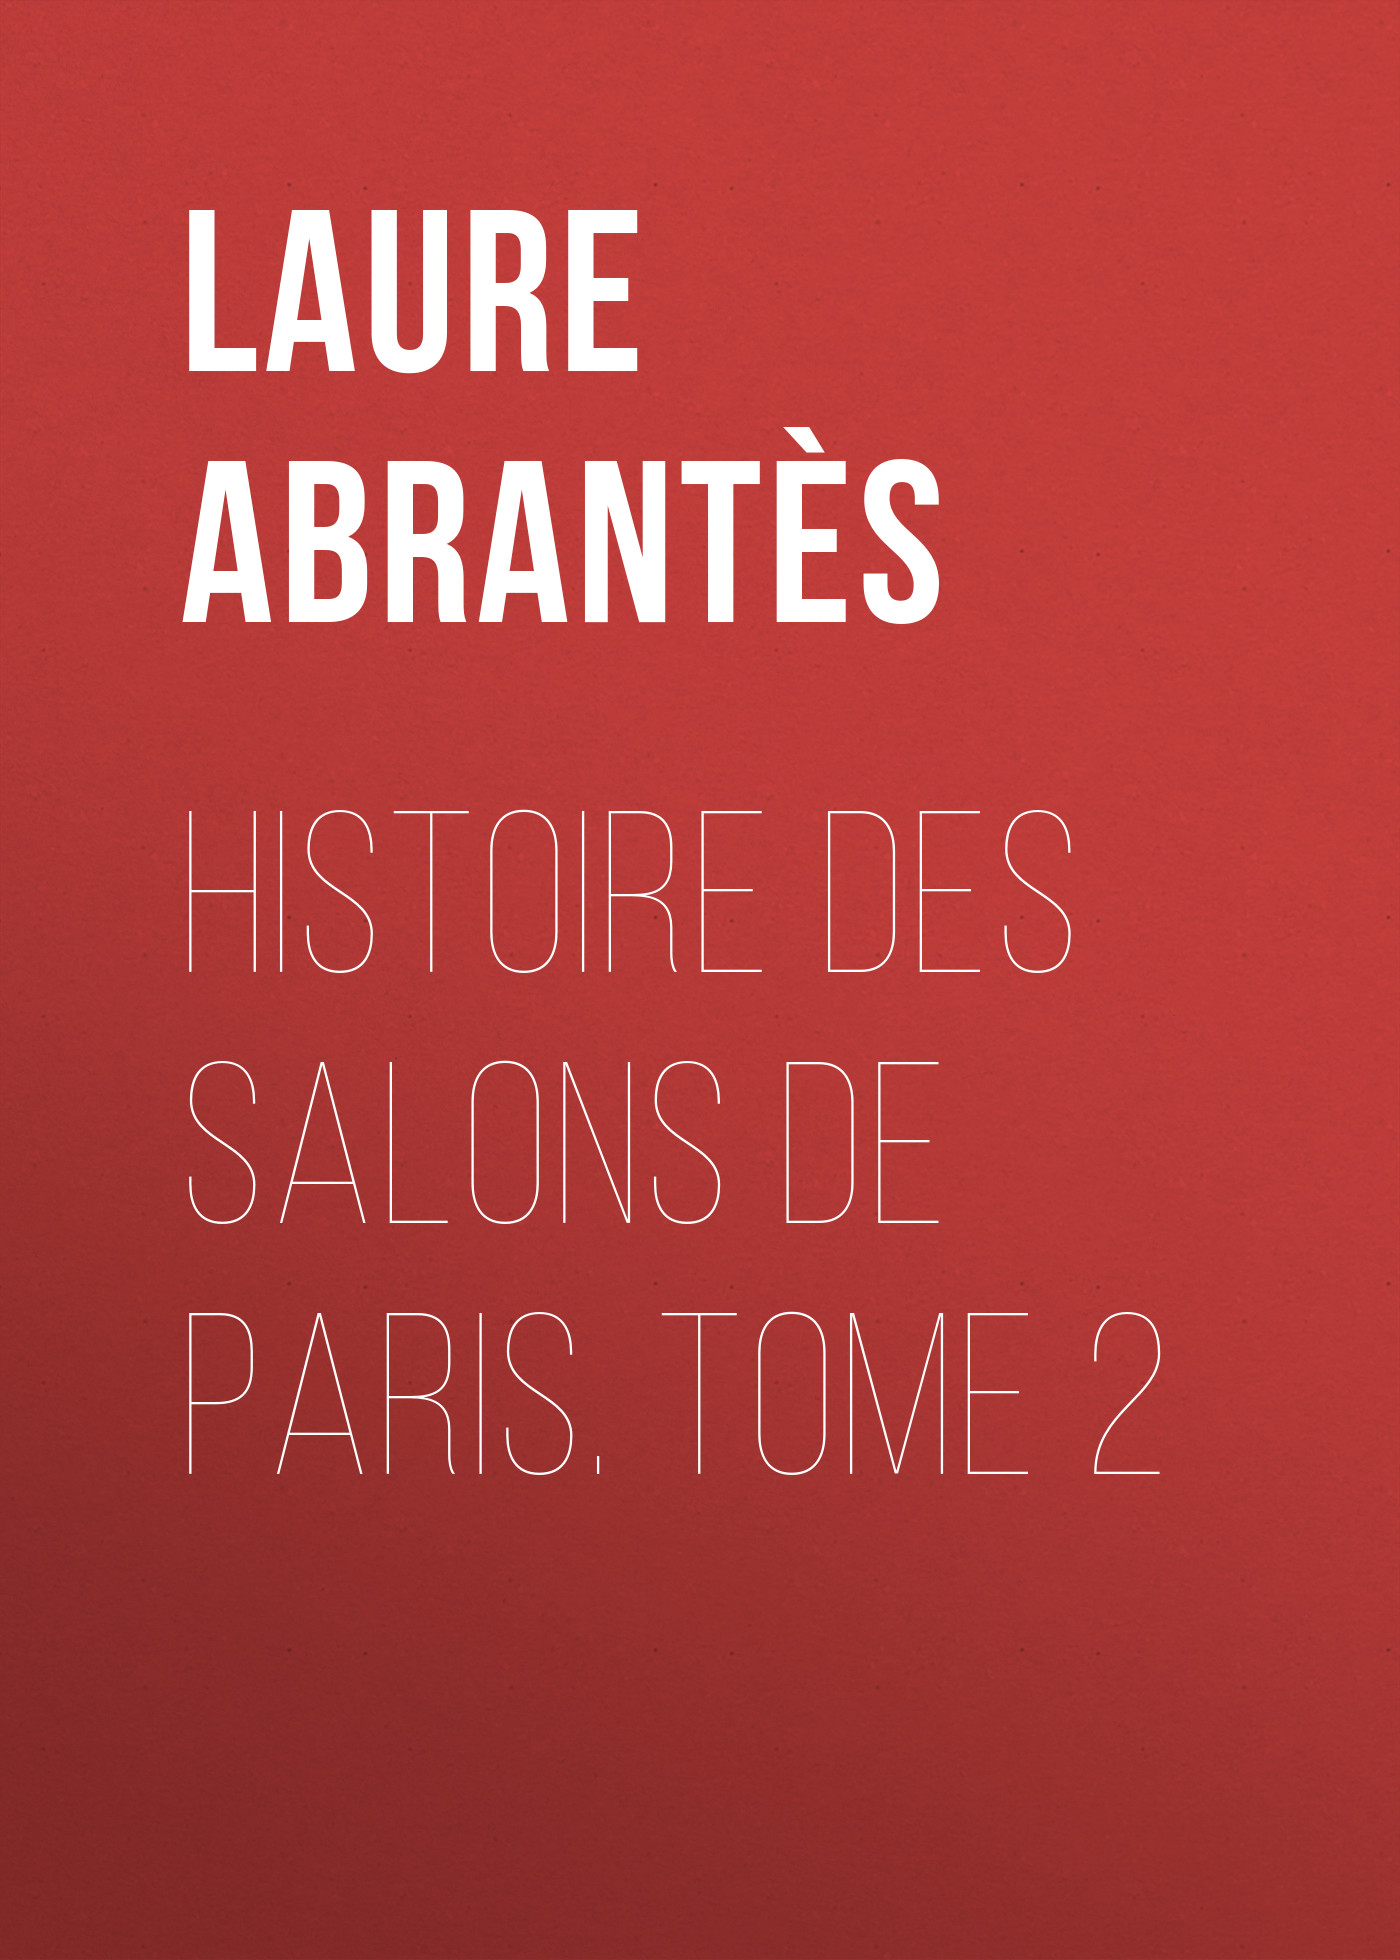 Книга Histoire des salons de Paris. Tome 2 из серии , созданная Laure Abrantès, может относится к жанру Зарубежная старинная литература, Зарубежная классика. Стоимость электронной книги Histoire des salons de Paris. Tome 2 с идентификатором 24166124 составляет 5.99 руб.